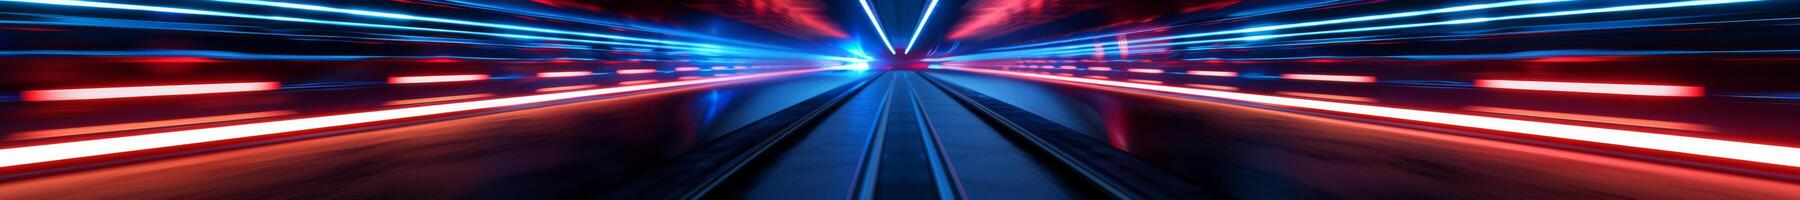 velocità tunnel con blu e rosso neon splendore foto